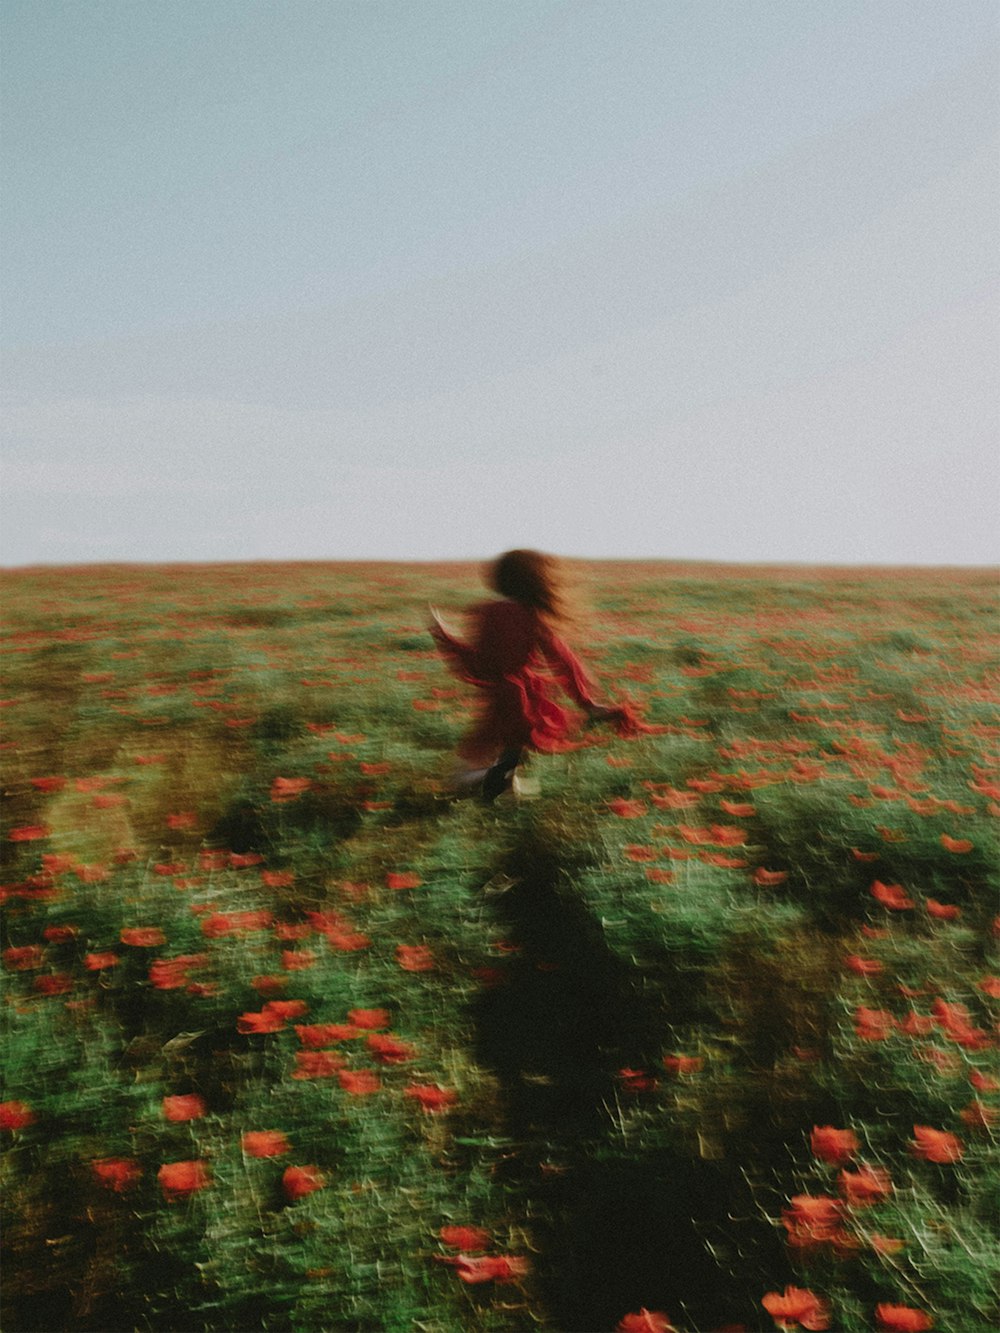 a woman running through a field of flowers